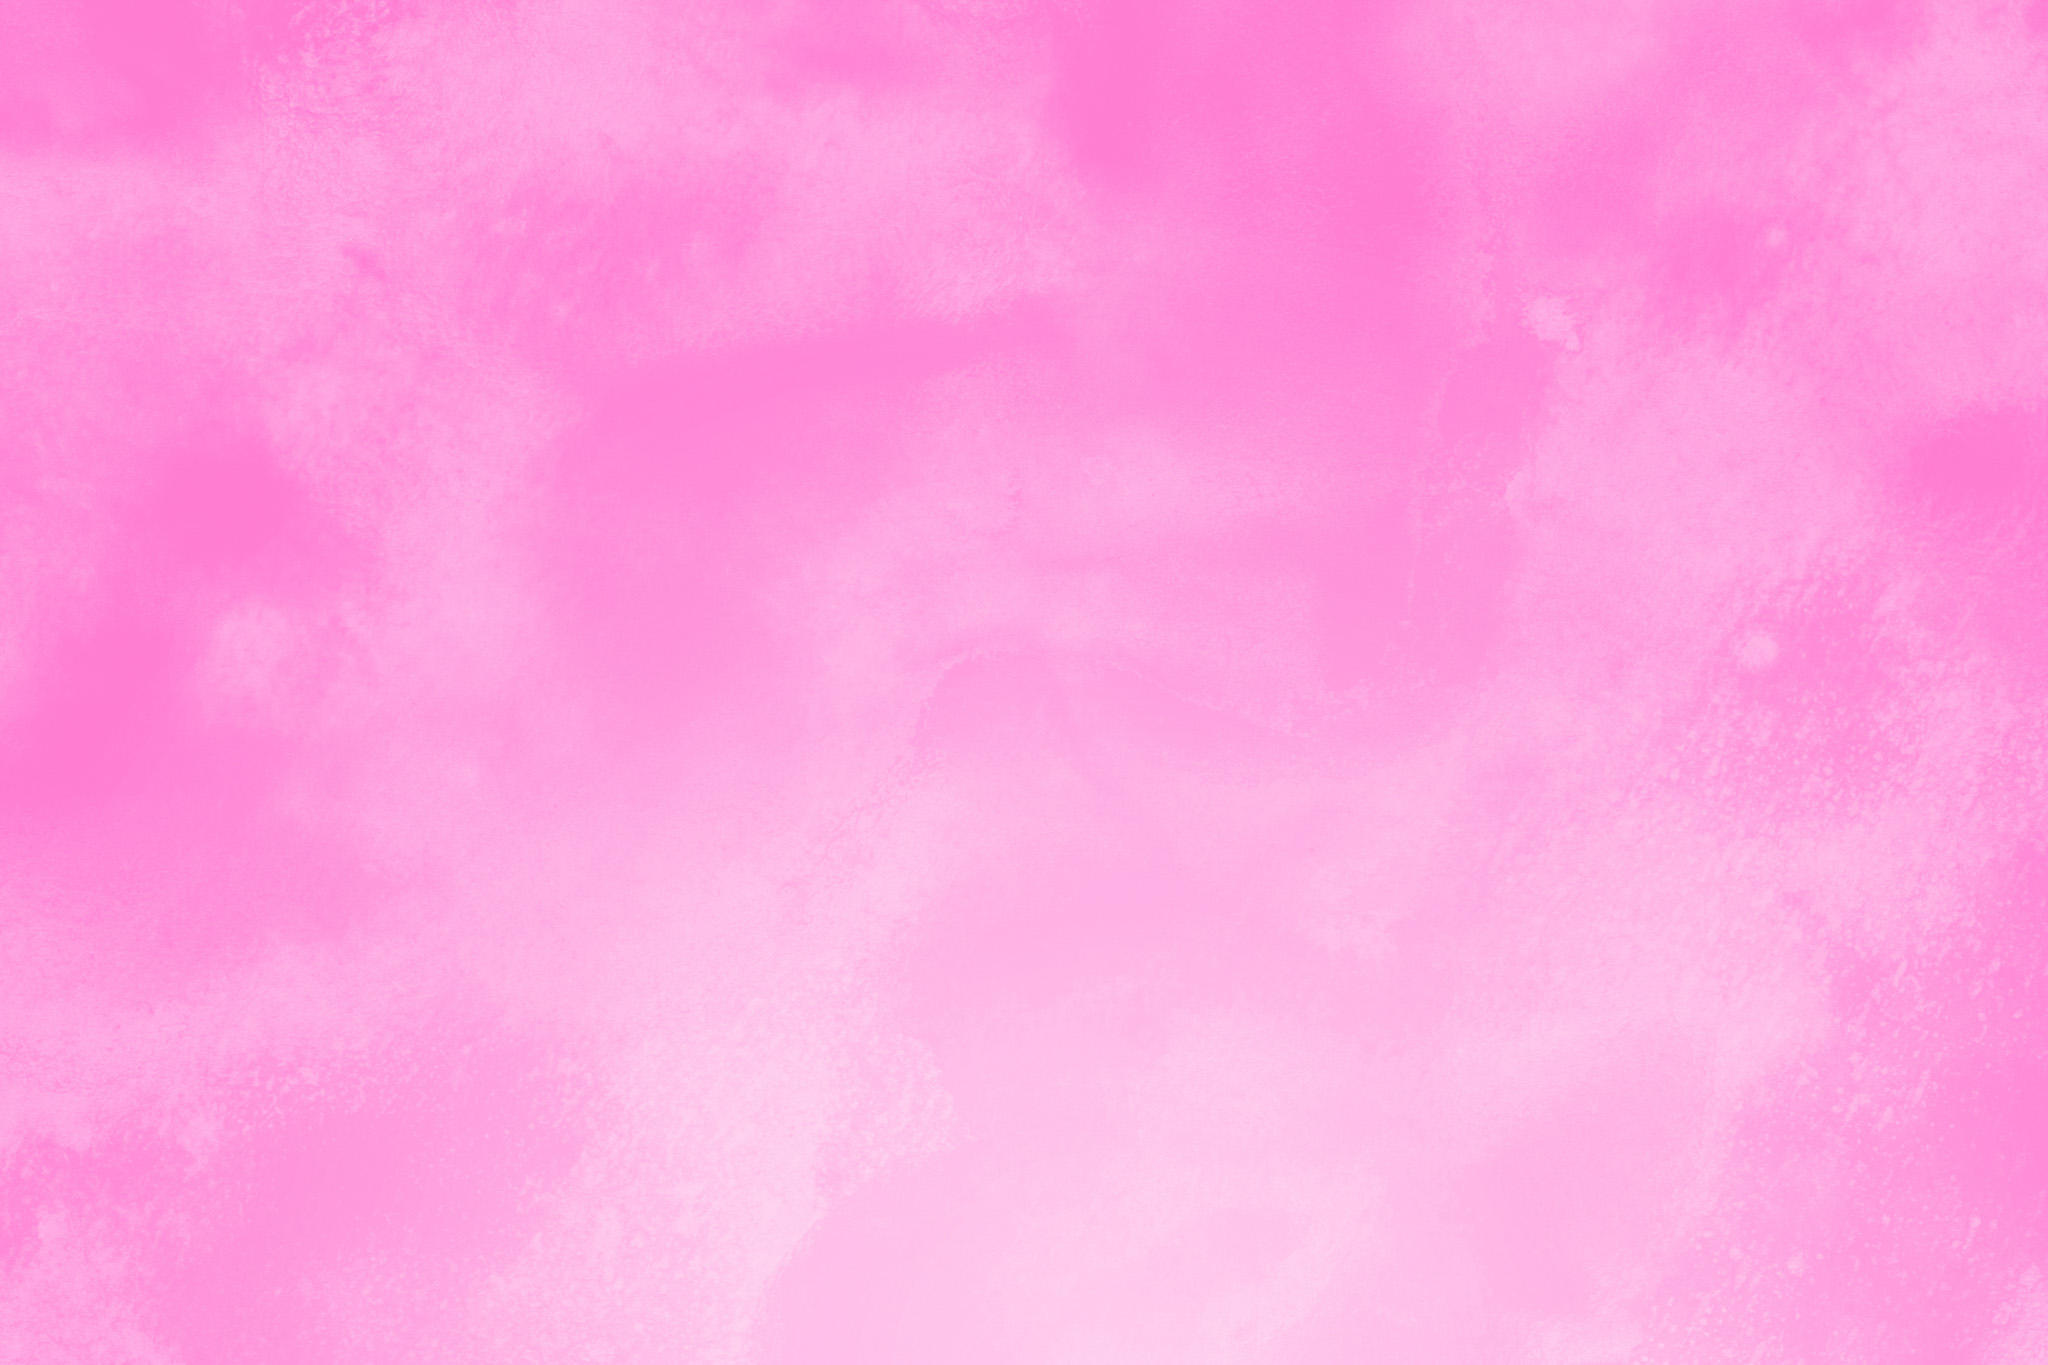 グラデーションがピンクのシンプル壁紙 の画像素材を無料ダウンロード 1 背景フリー素材 Beiz Images